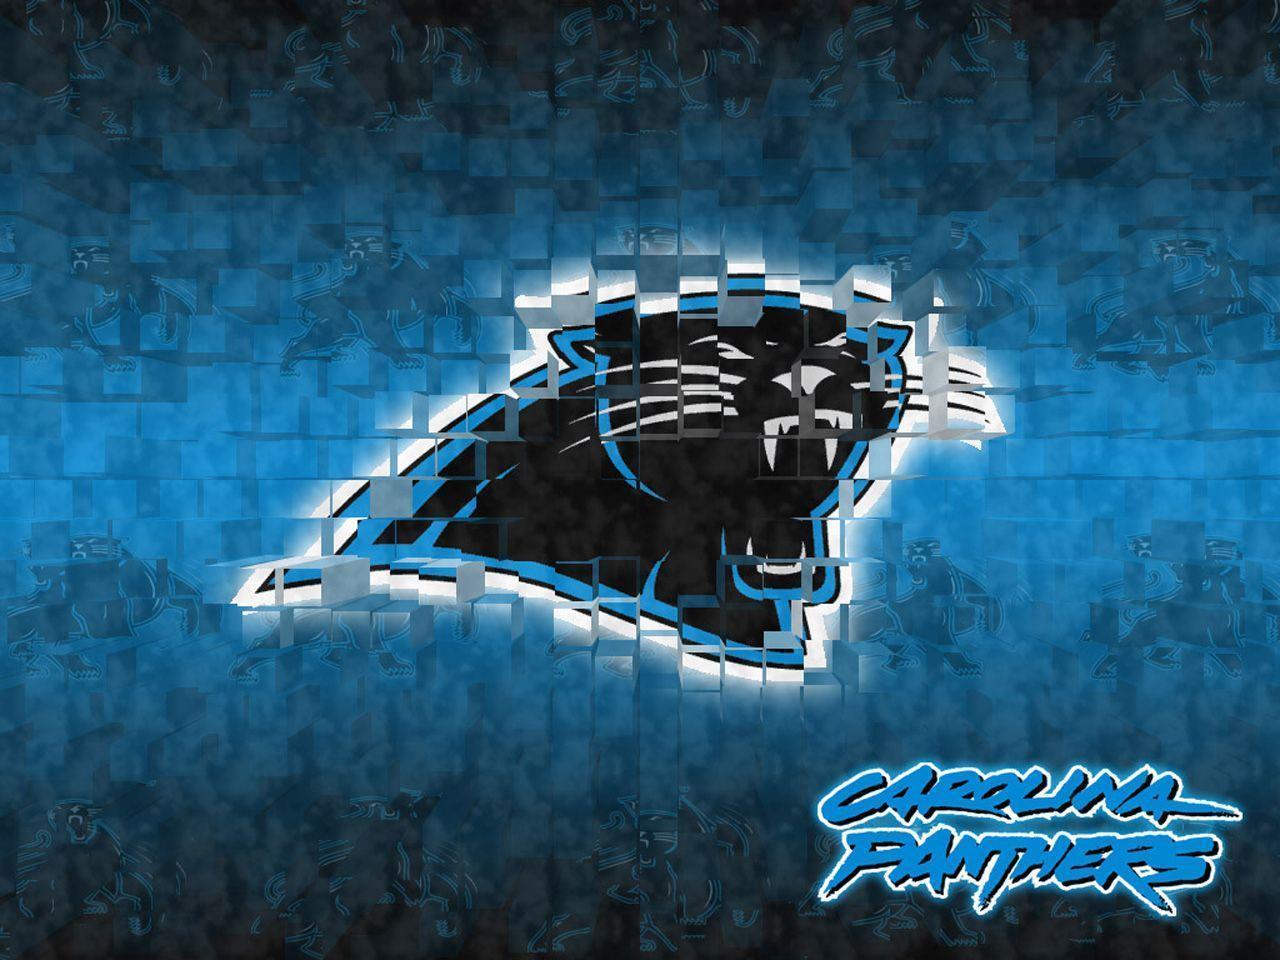 Carolina Panthers Wallpapers - Wallpaper Cave